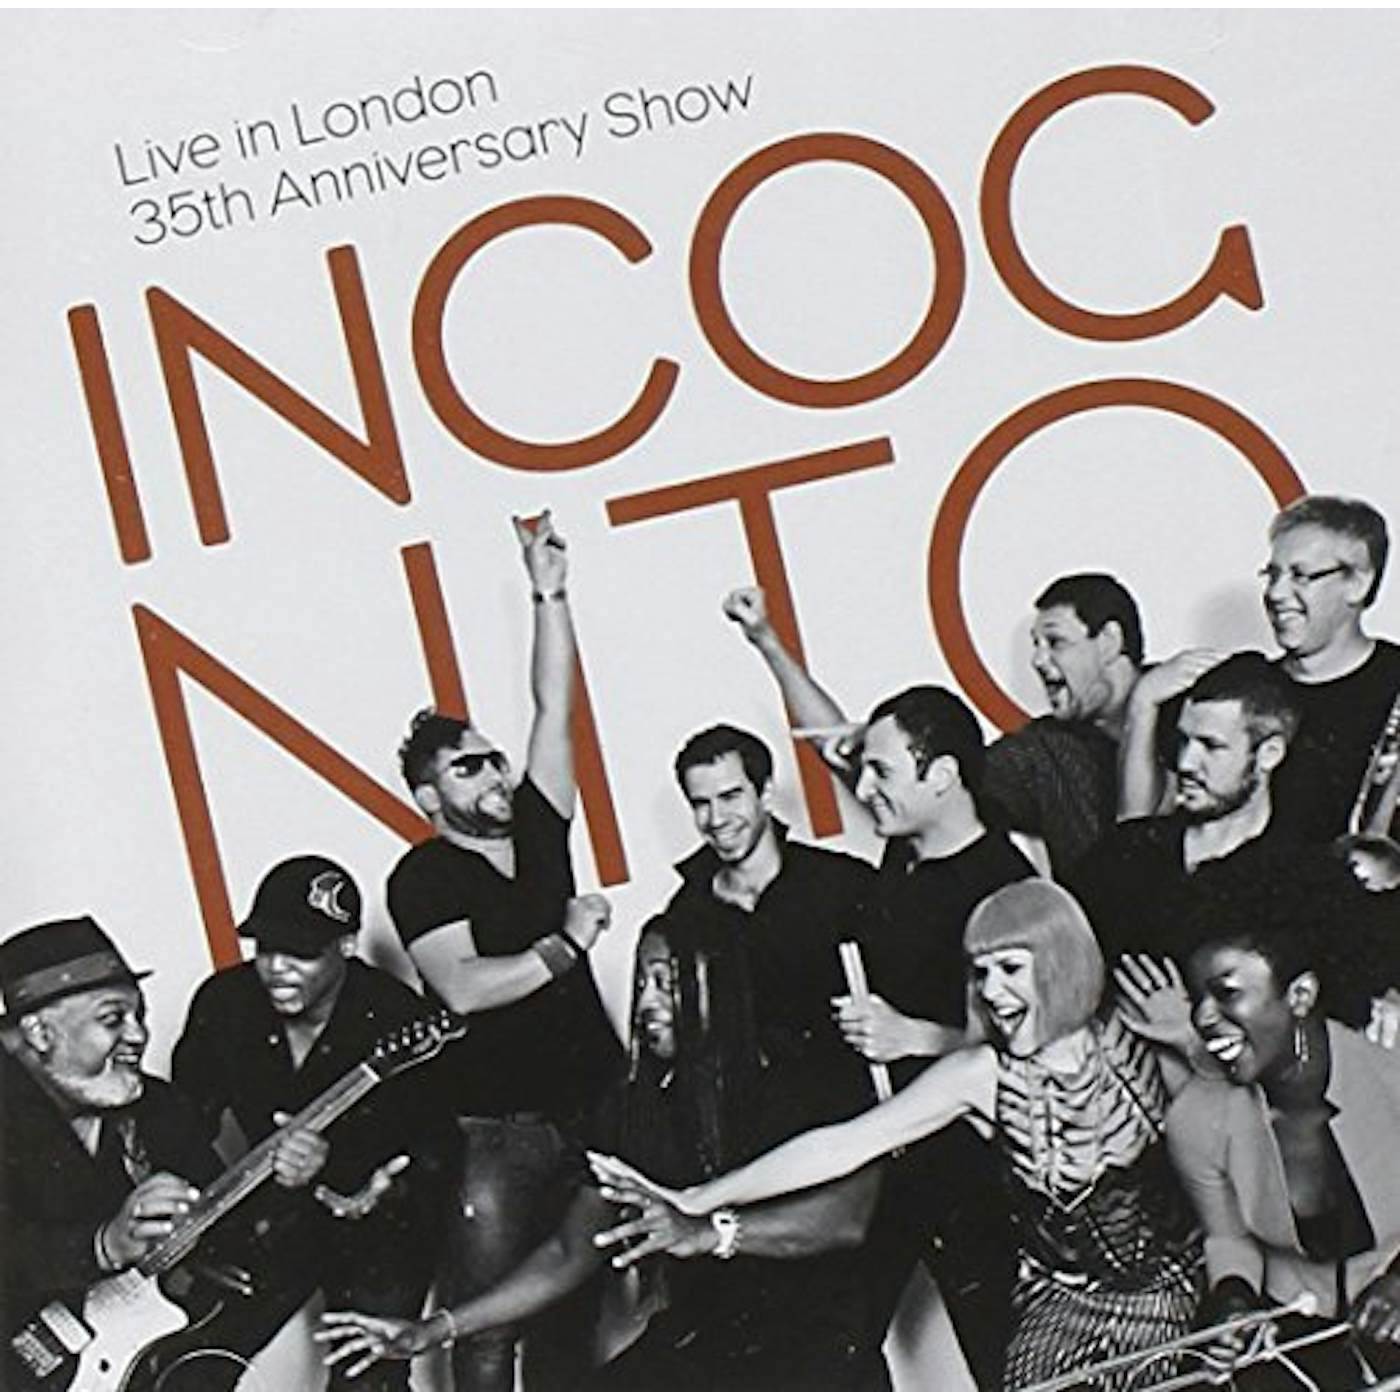 Incognito LIVE IN LONDON - 35TH ANNIVERSARY SHOW CD